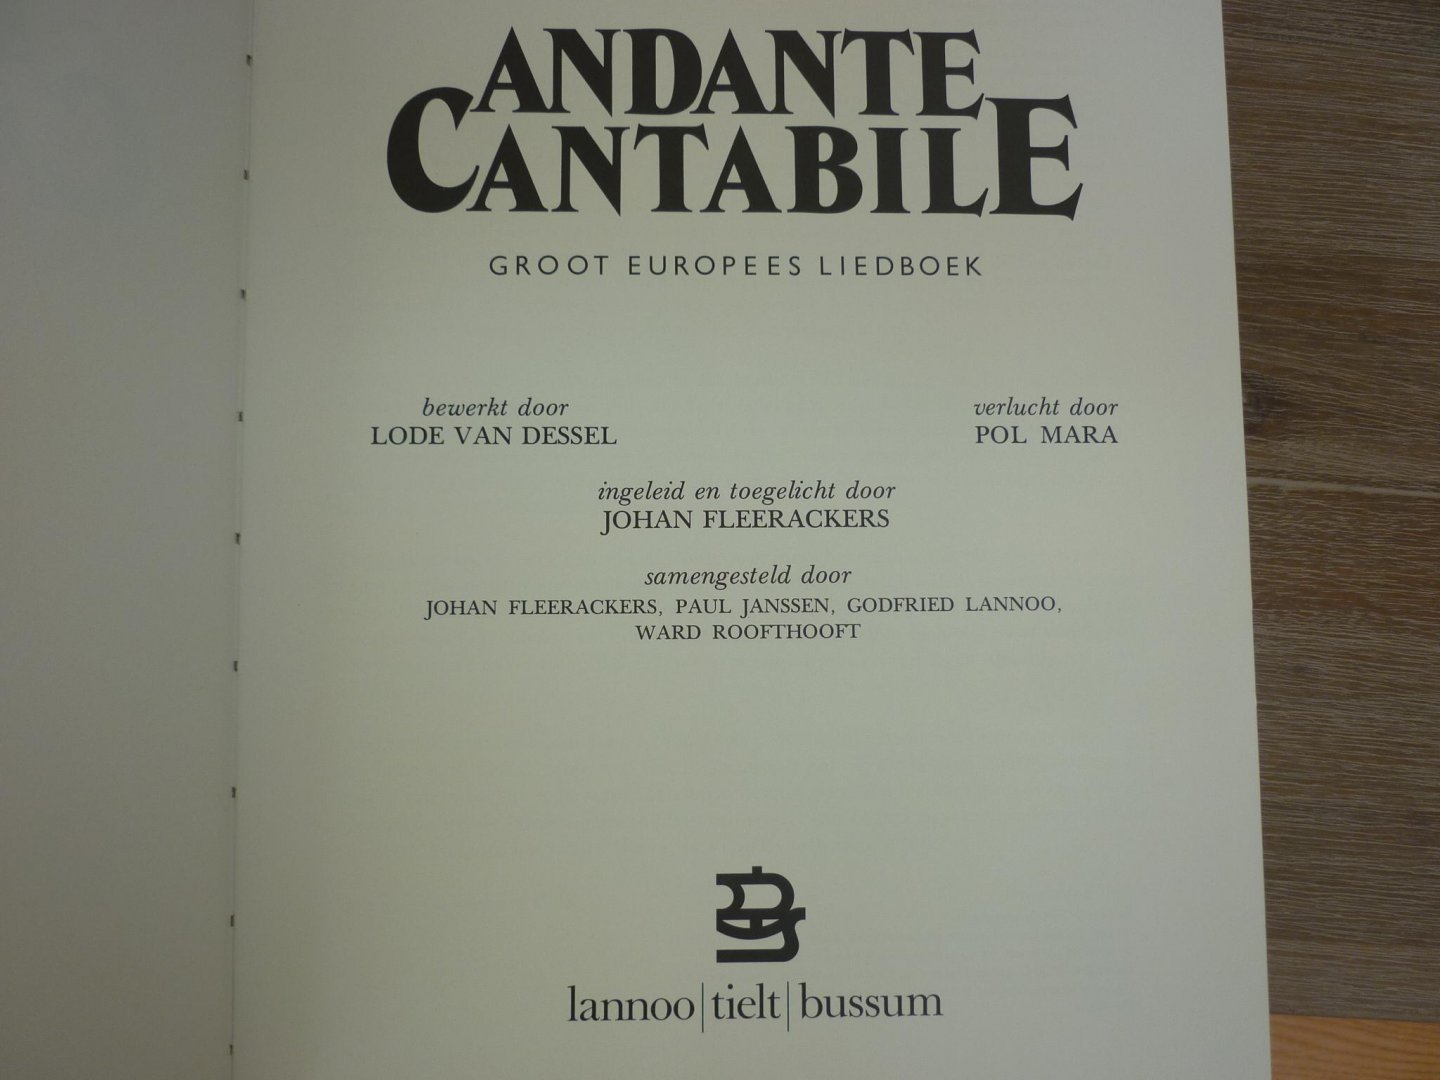 Dessel; Lode van / Johan Fleerackers - Andante Cantabile; Groot Europees liedboek